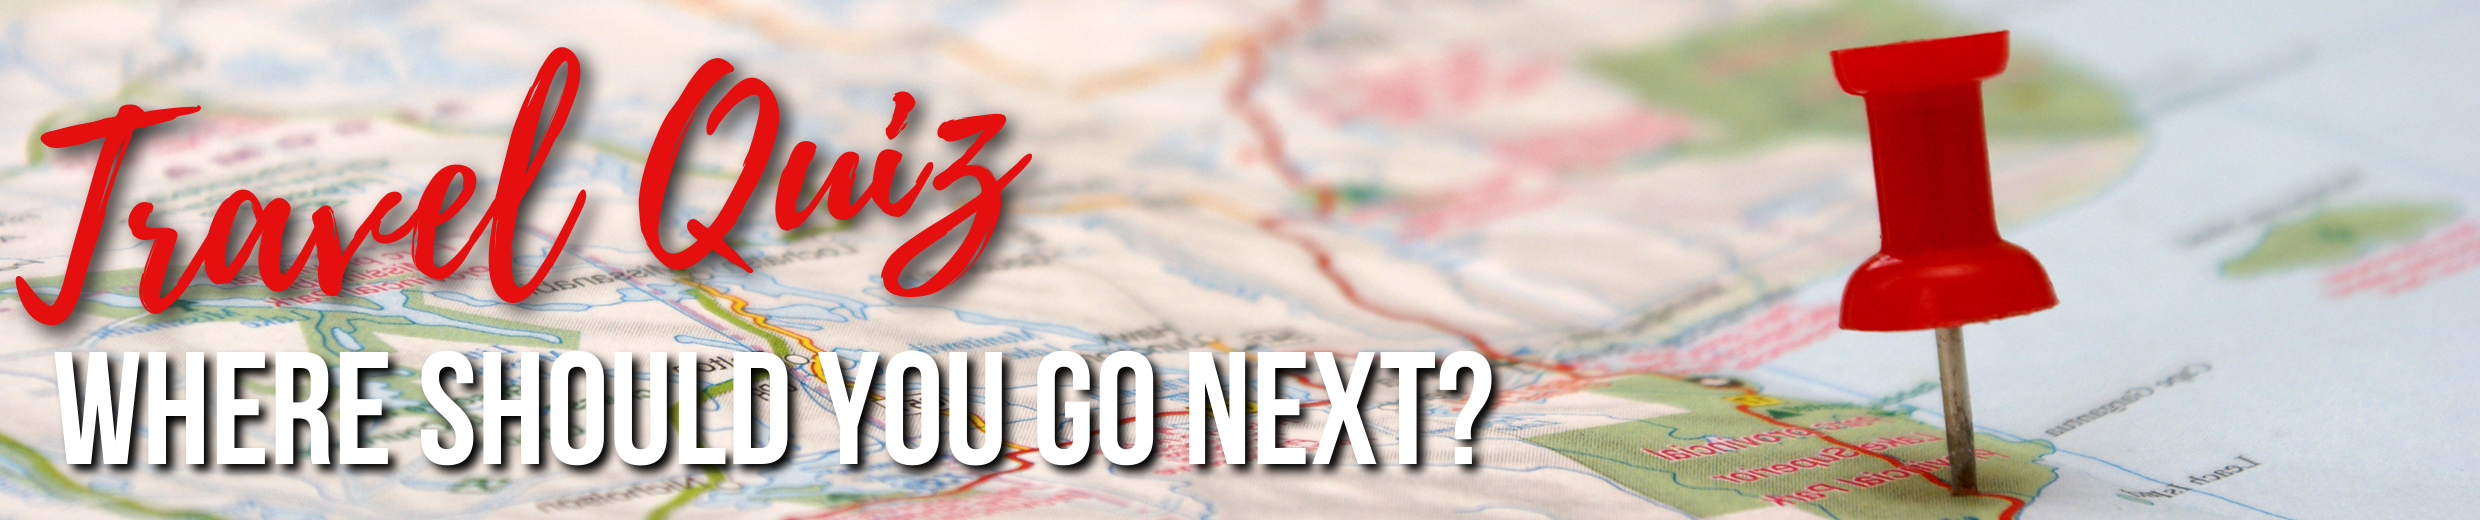 Travel Quiz Where Should You Go Next?